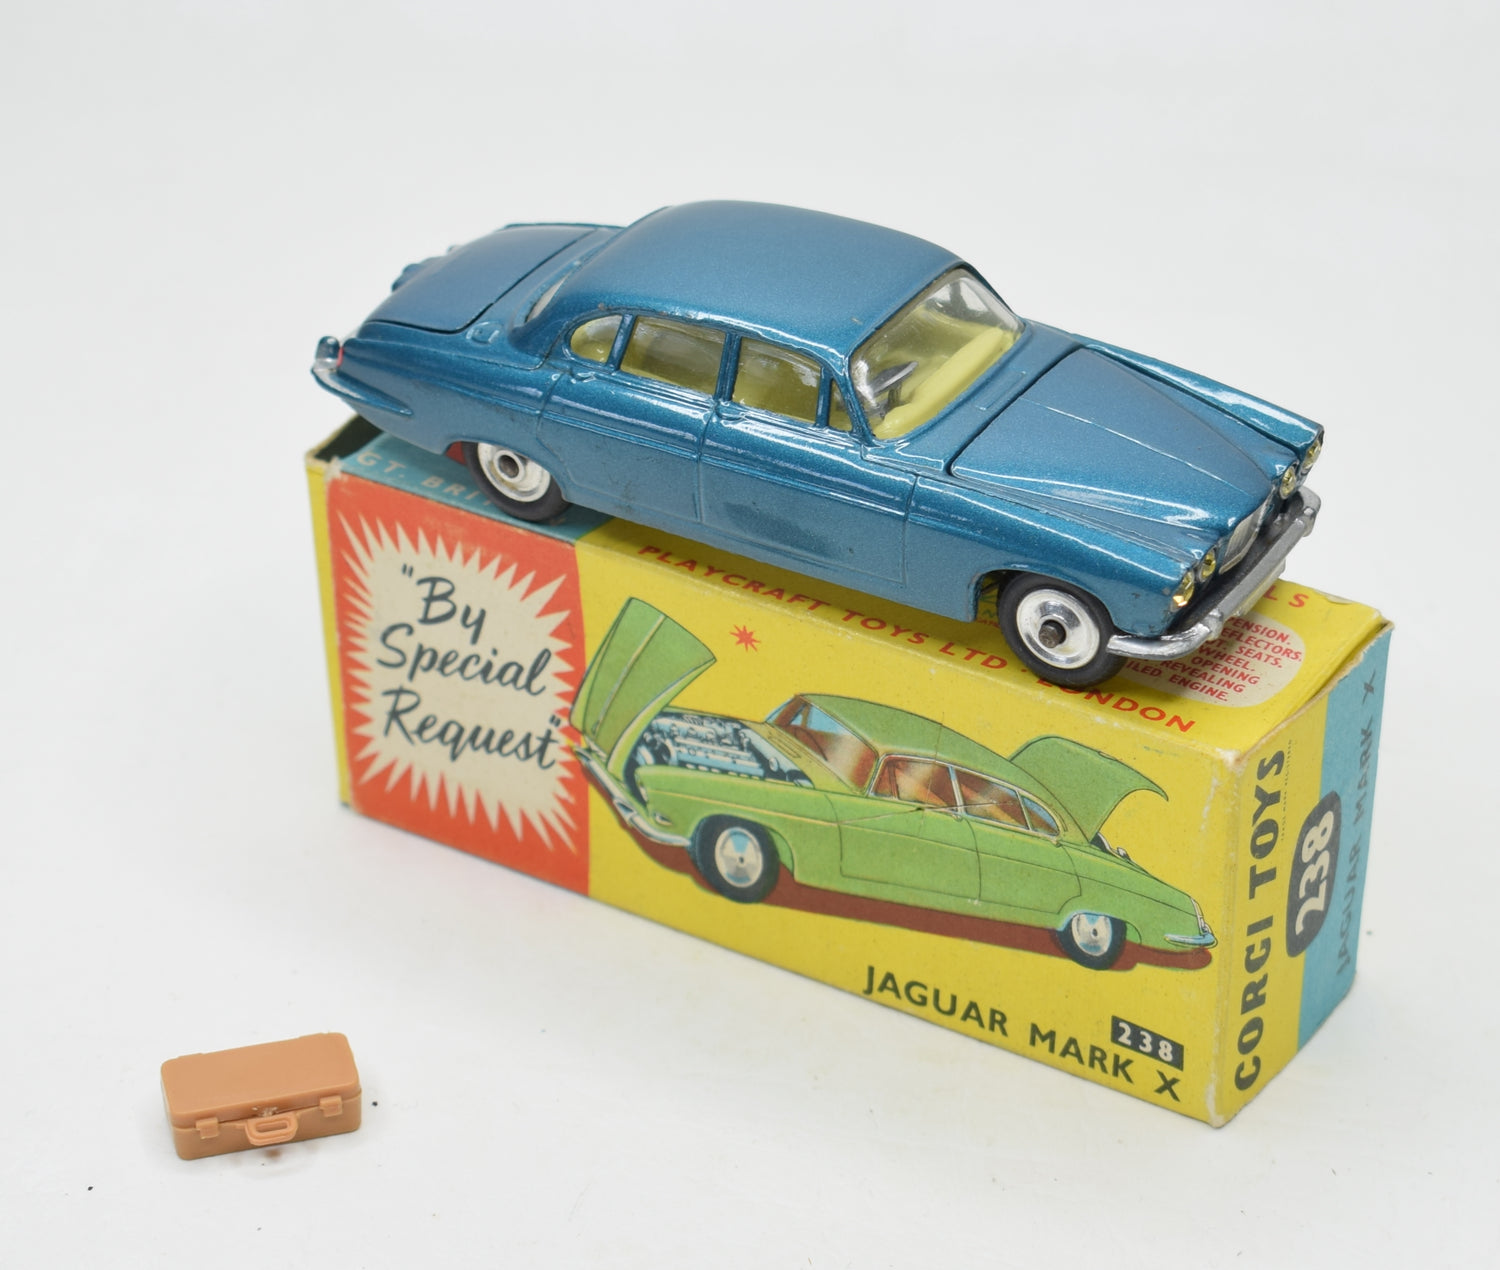 Corgi toys 238 Mark X Jaguar Near Mint/Boxed 'Cotswold' Collection Part 2.